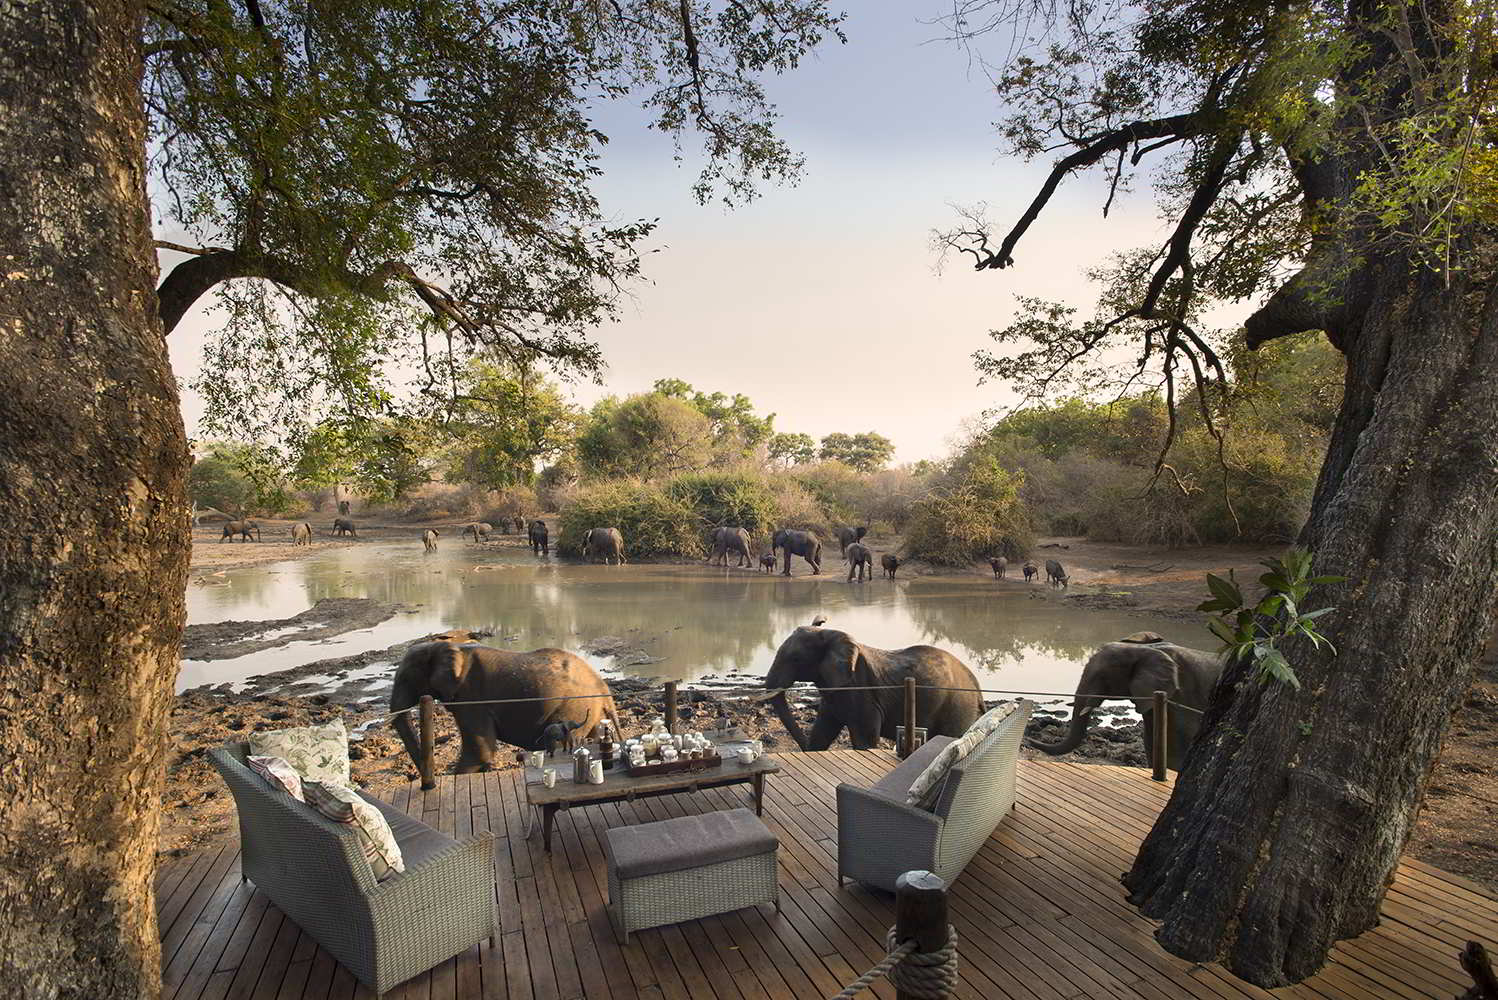 mana pools zimbabwe safari trip